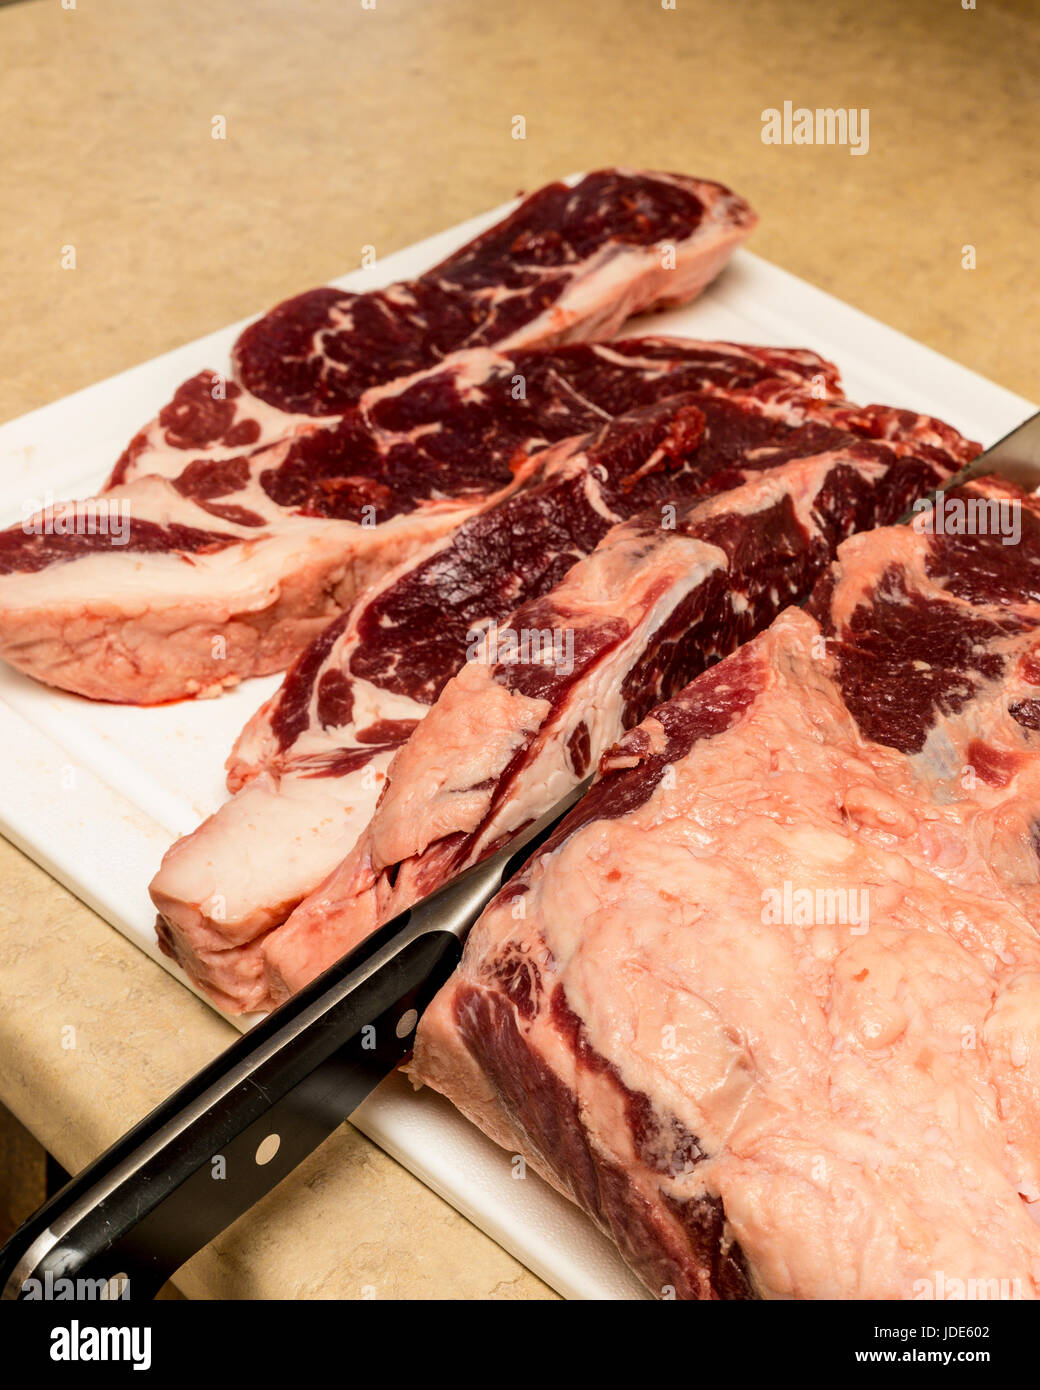 Hause Schlachten ein Rind Lende in New York Steaks geschnitten Stockfoto